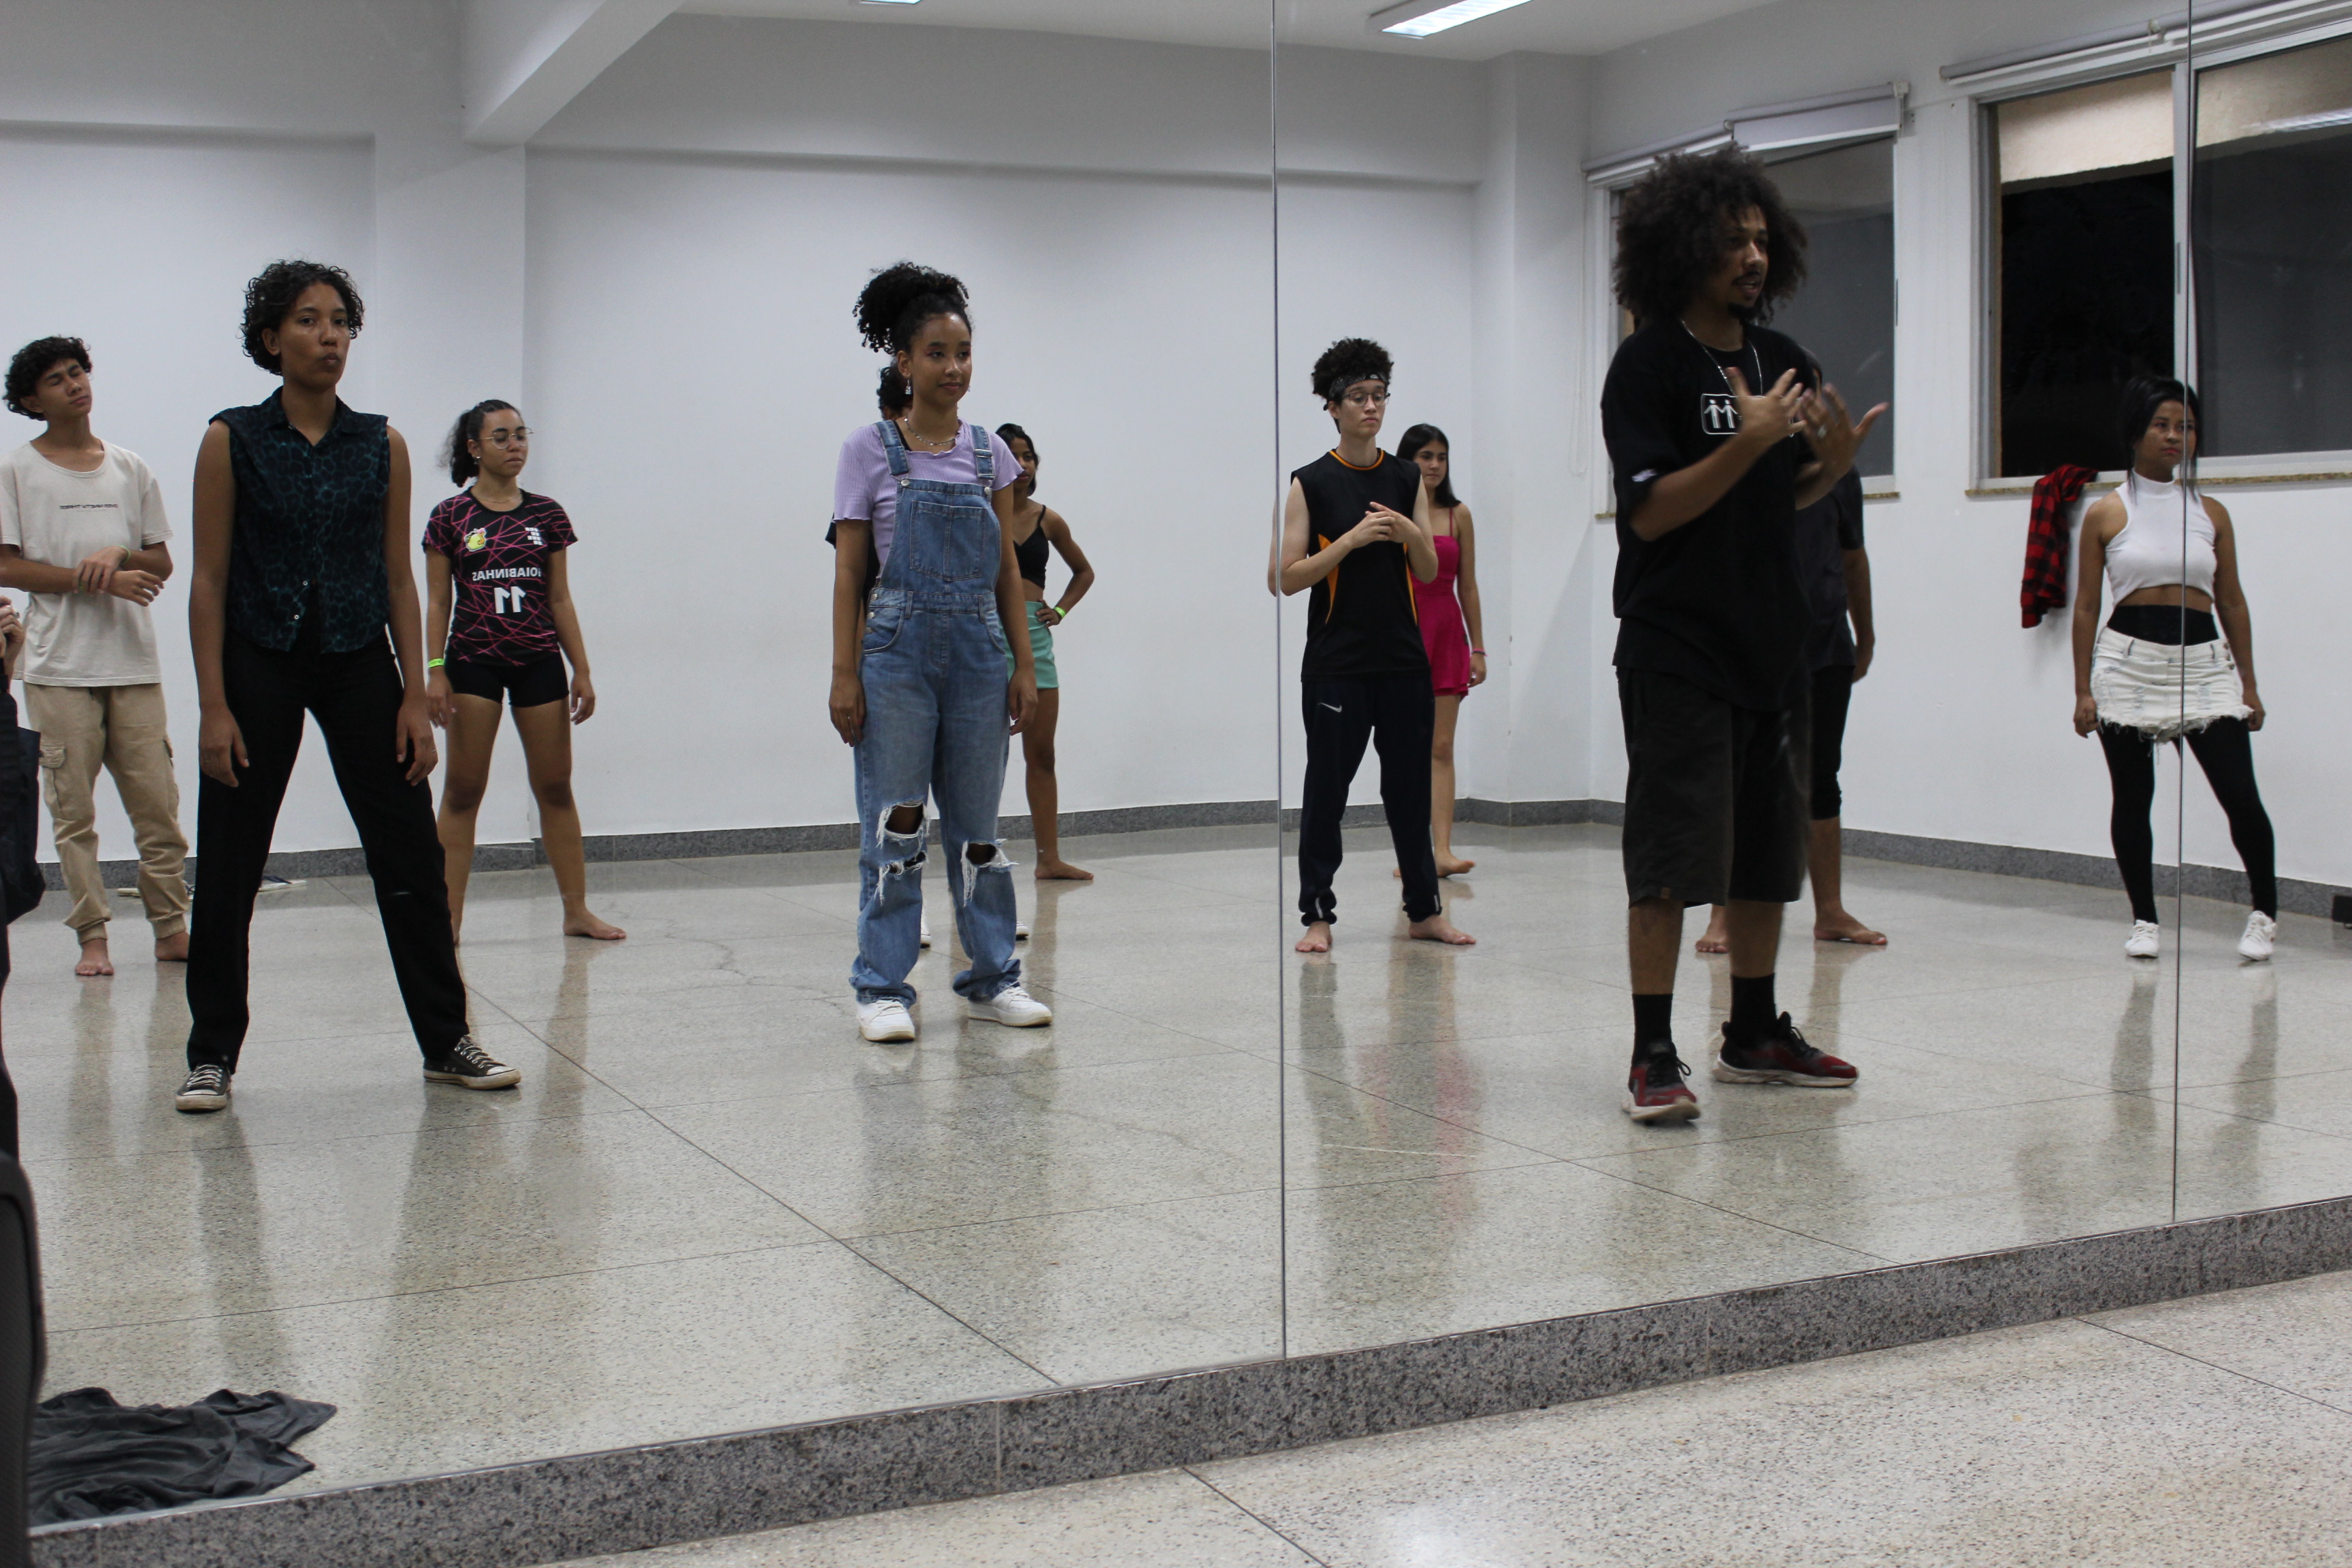 Oficina de hip hop ministrada por Allan Silva, estudante do curso de licenciatura em Dança